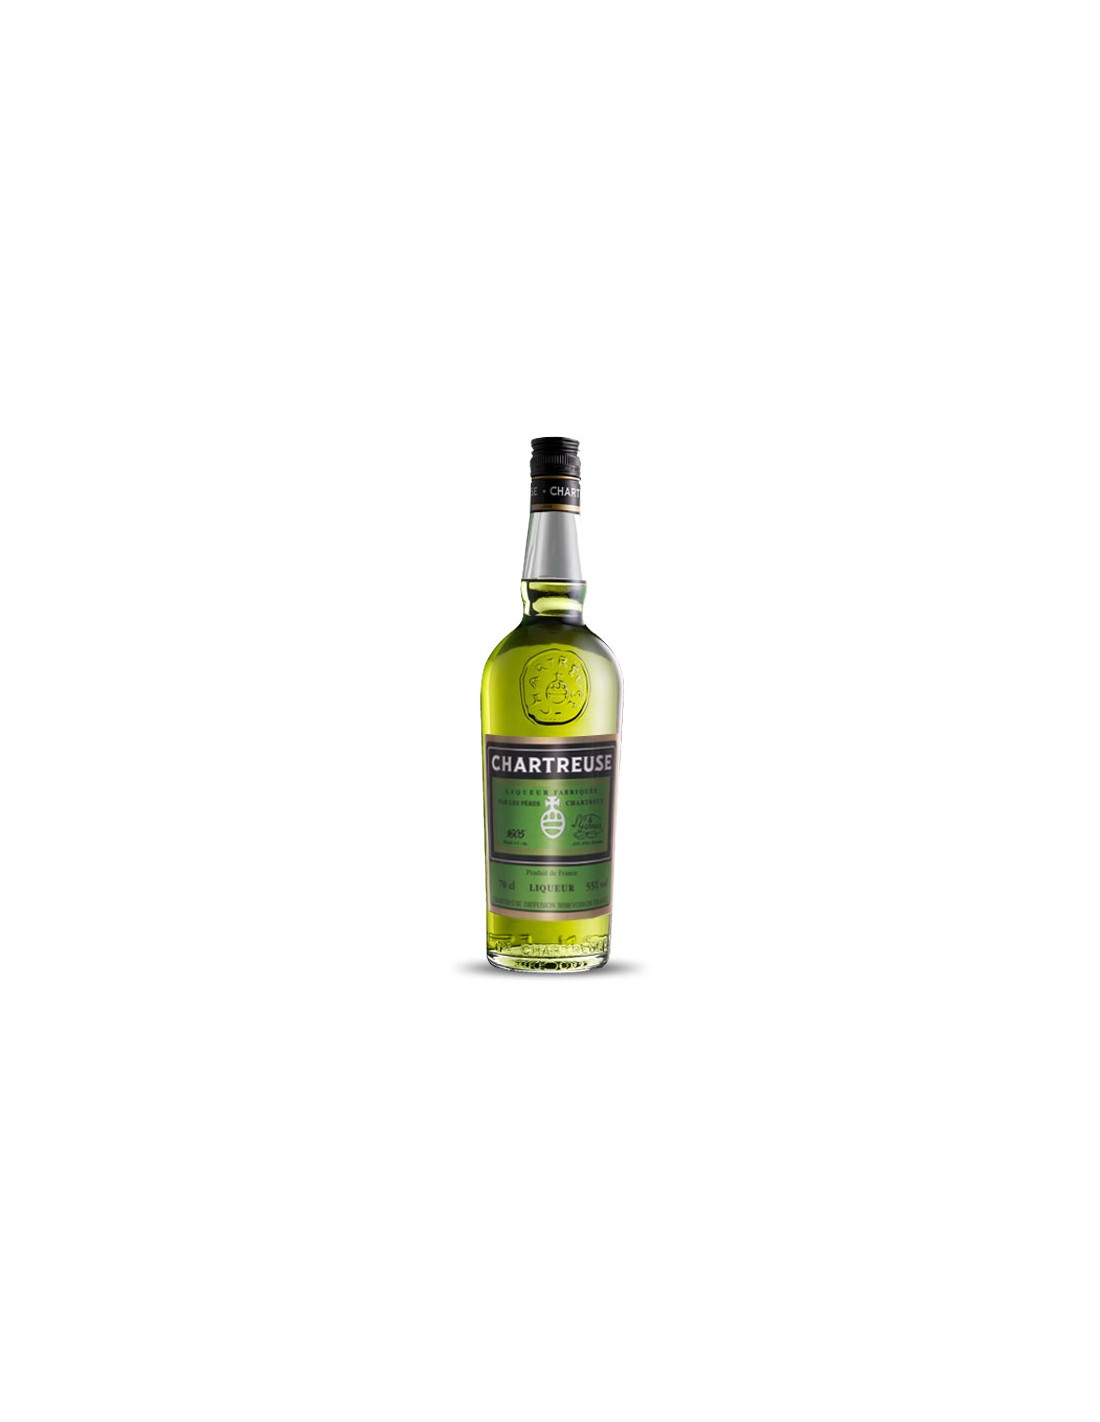 CHARTREUSE Liqueur Chartreuse verte 55% 70cl pas cher 